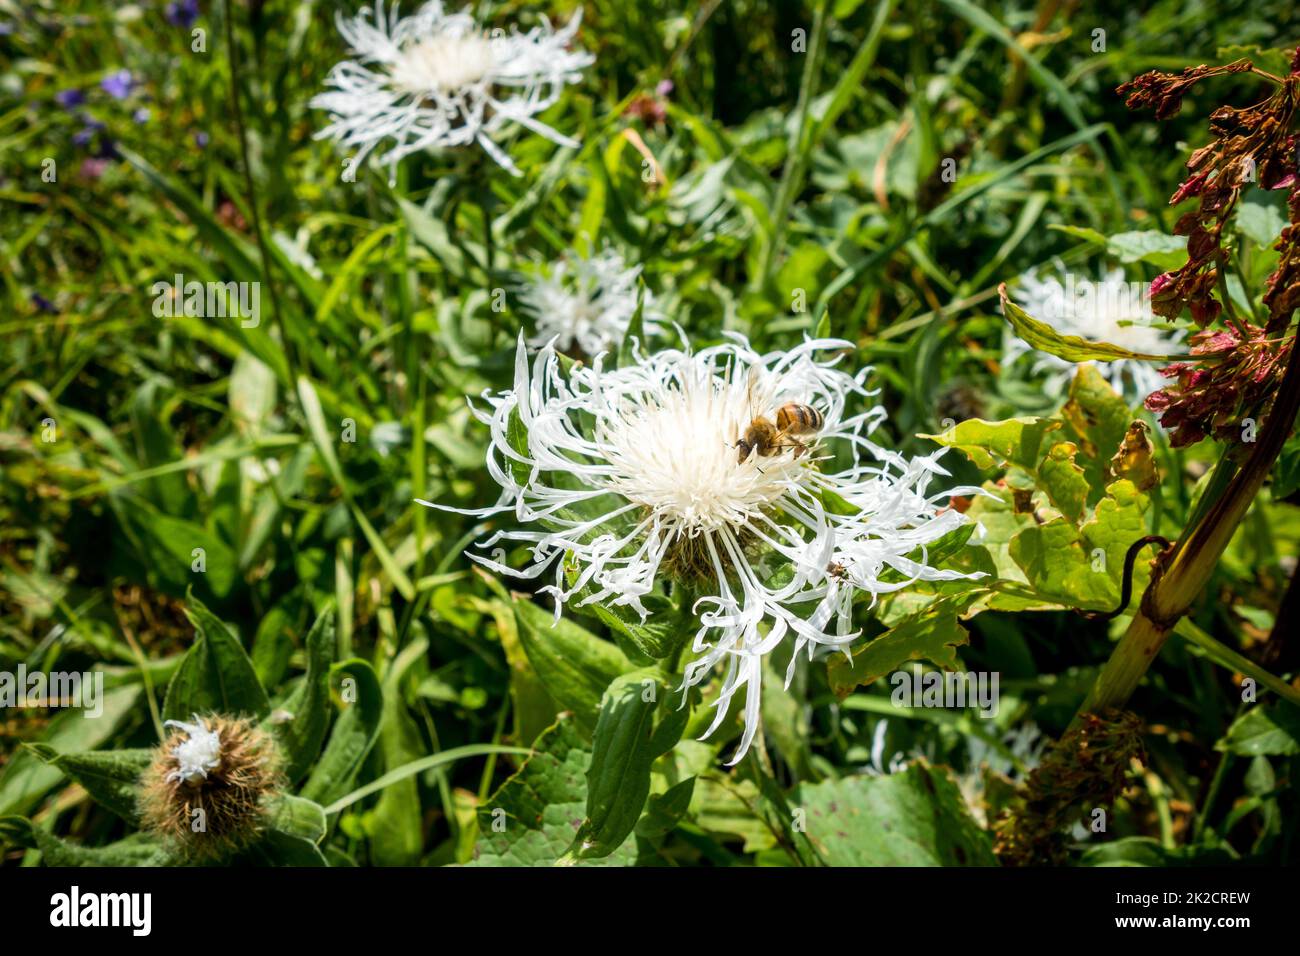 Vue rapprochée d'une abeille pollinisant une fleur de centaurée Banque D'Images